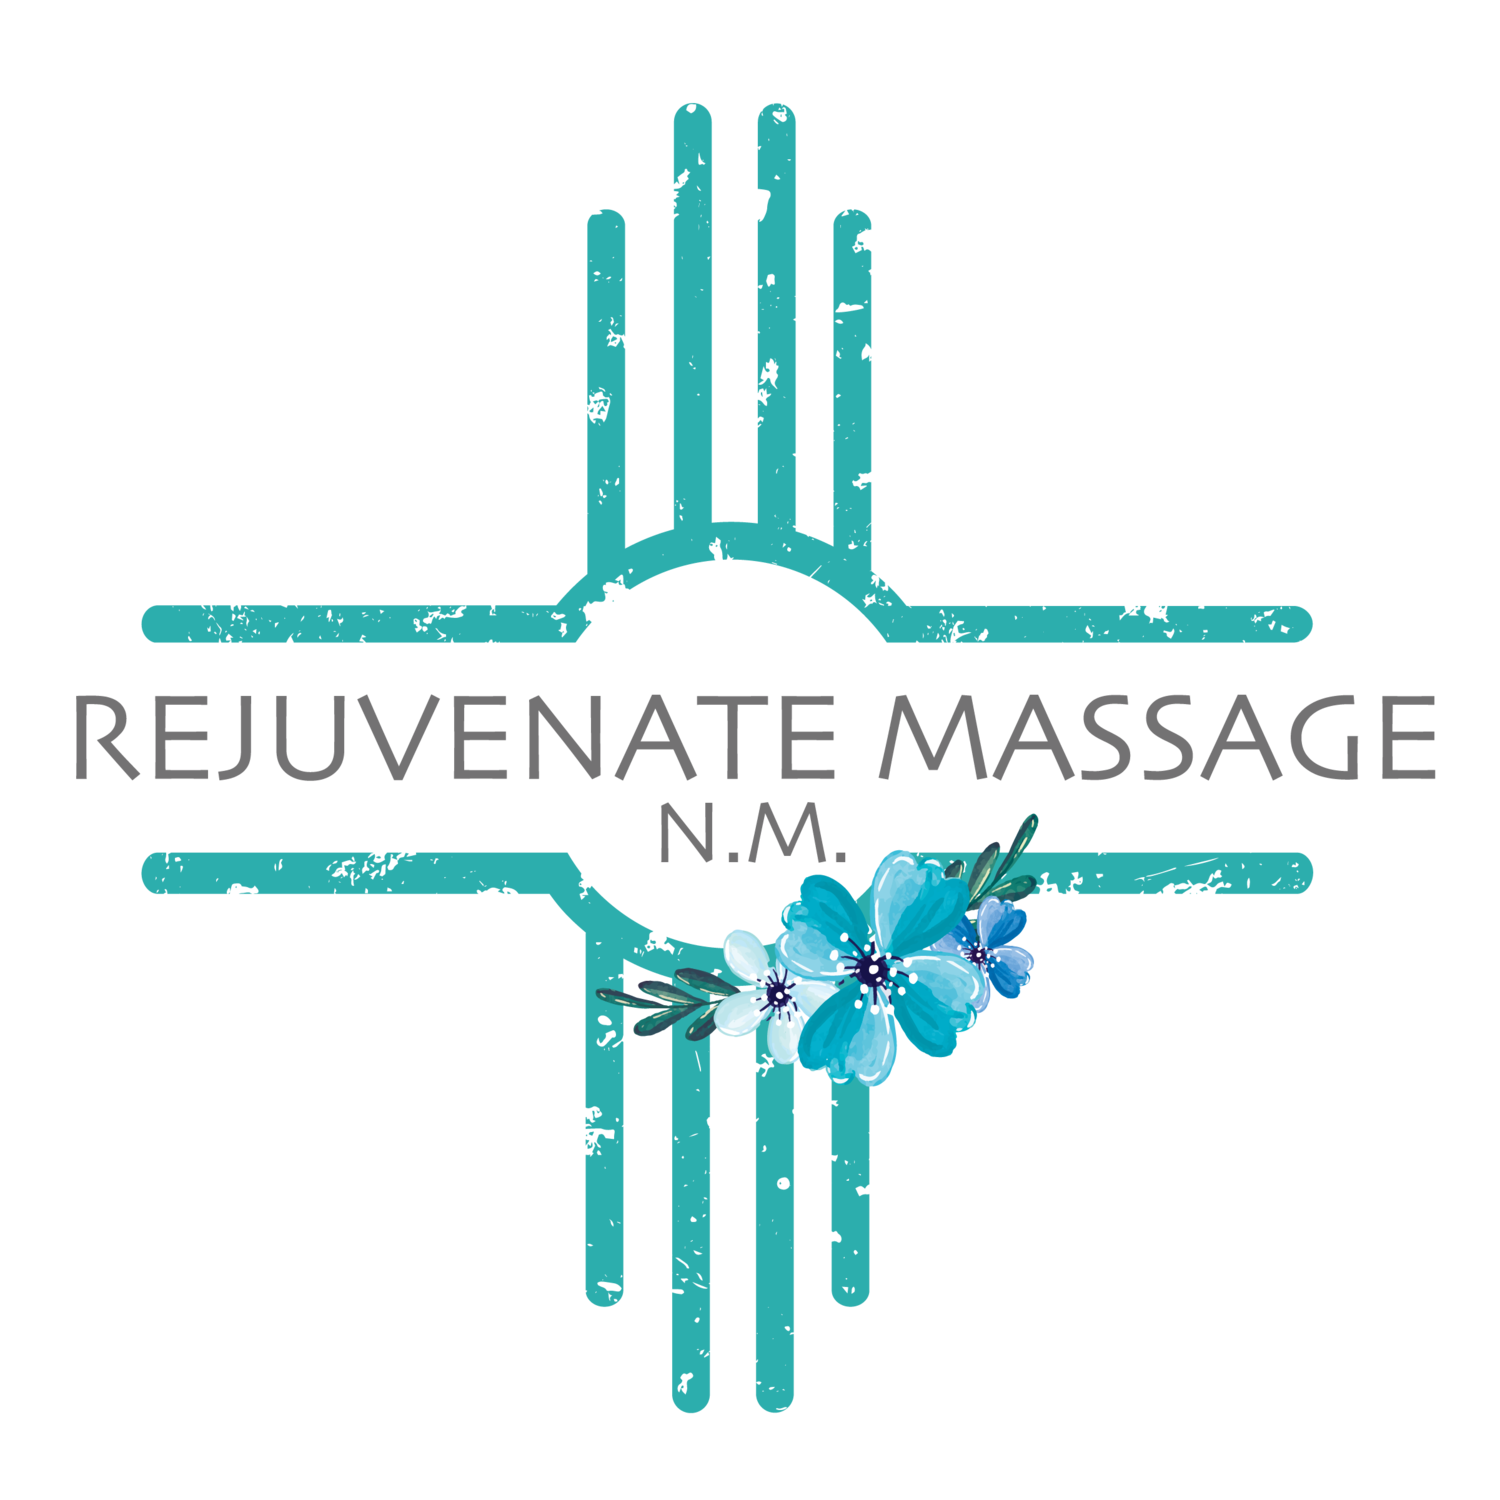 Rejuvenate Massage NM